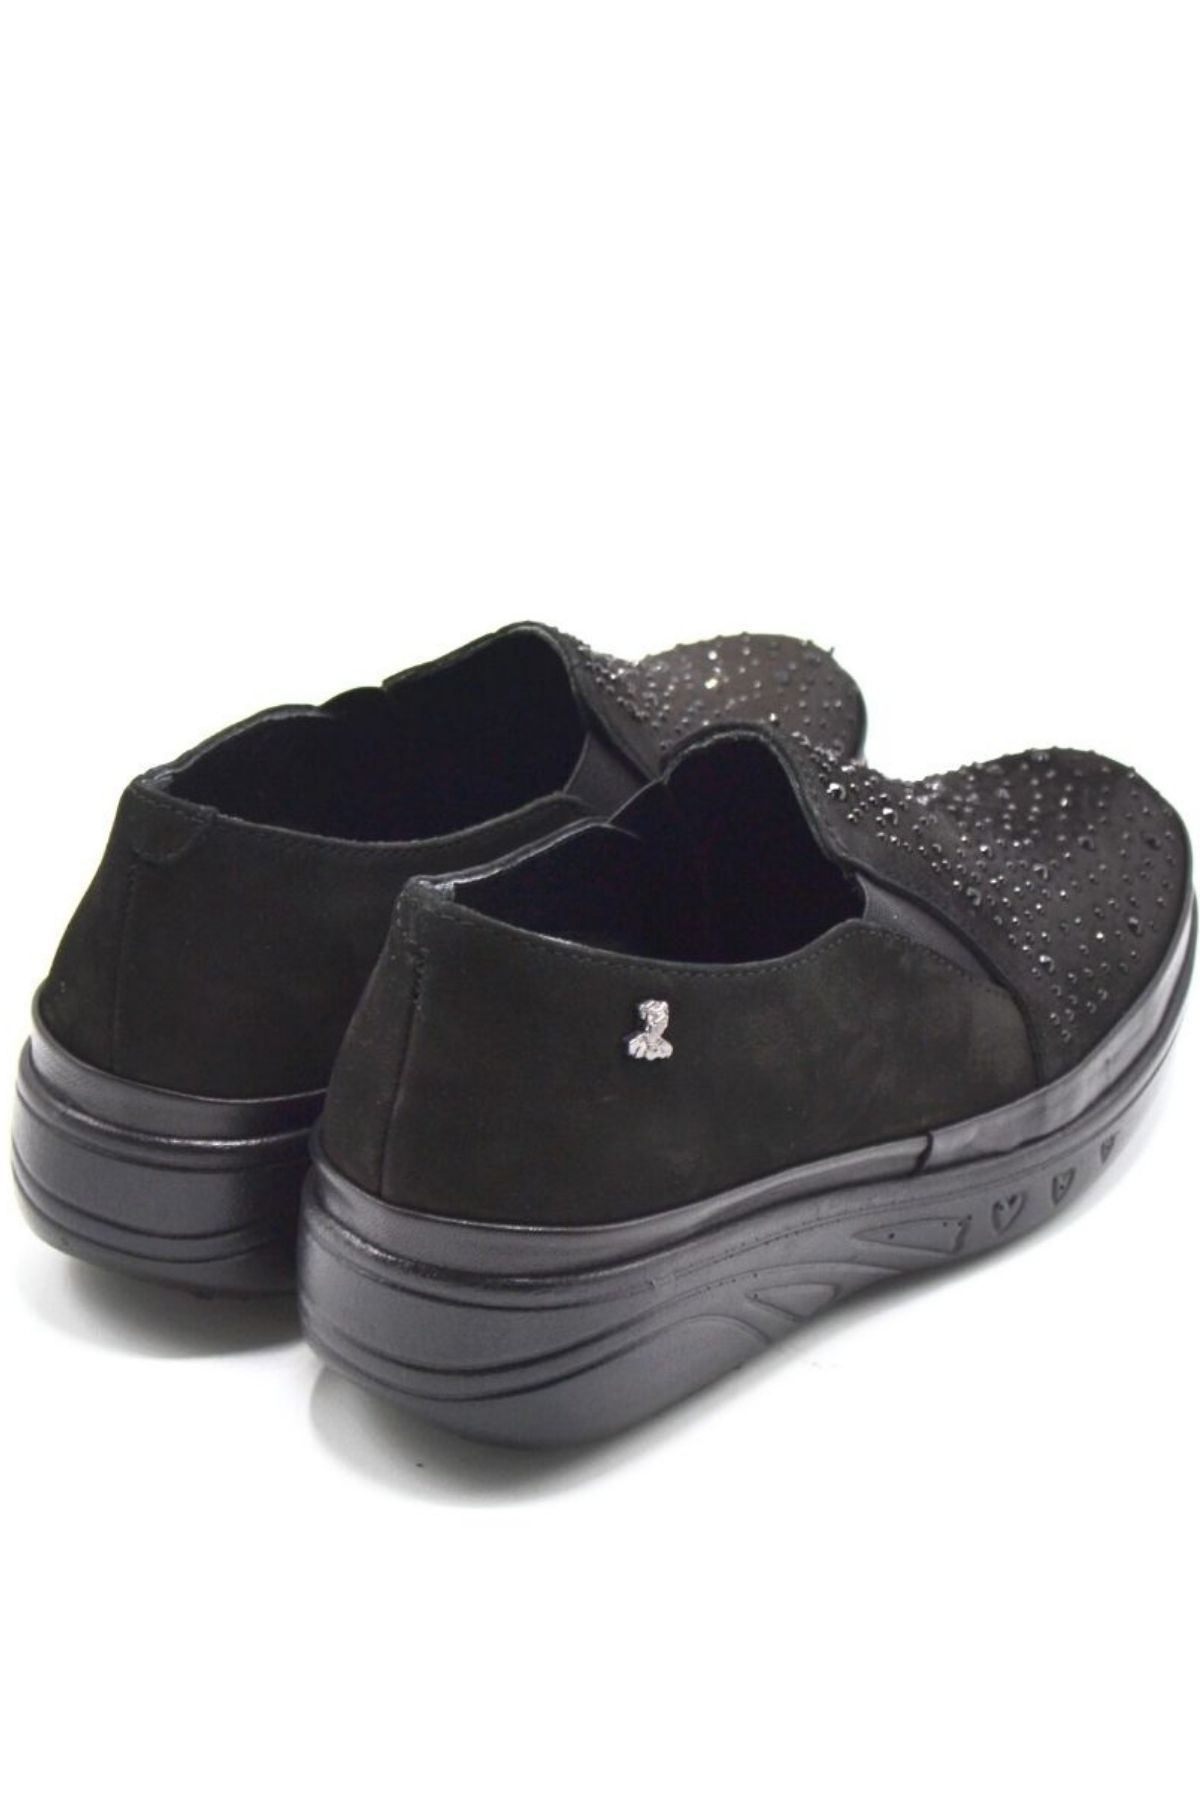 Kadın Airflow Deri Ayakkabı Siyah 1820504K - Thumbnail